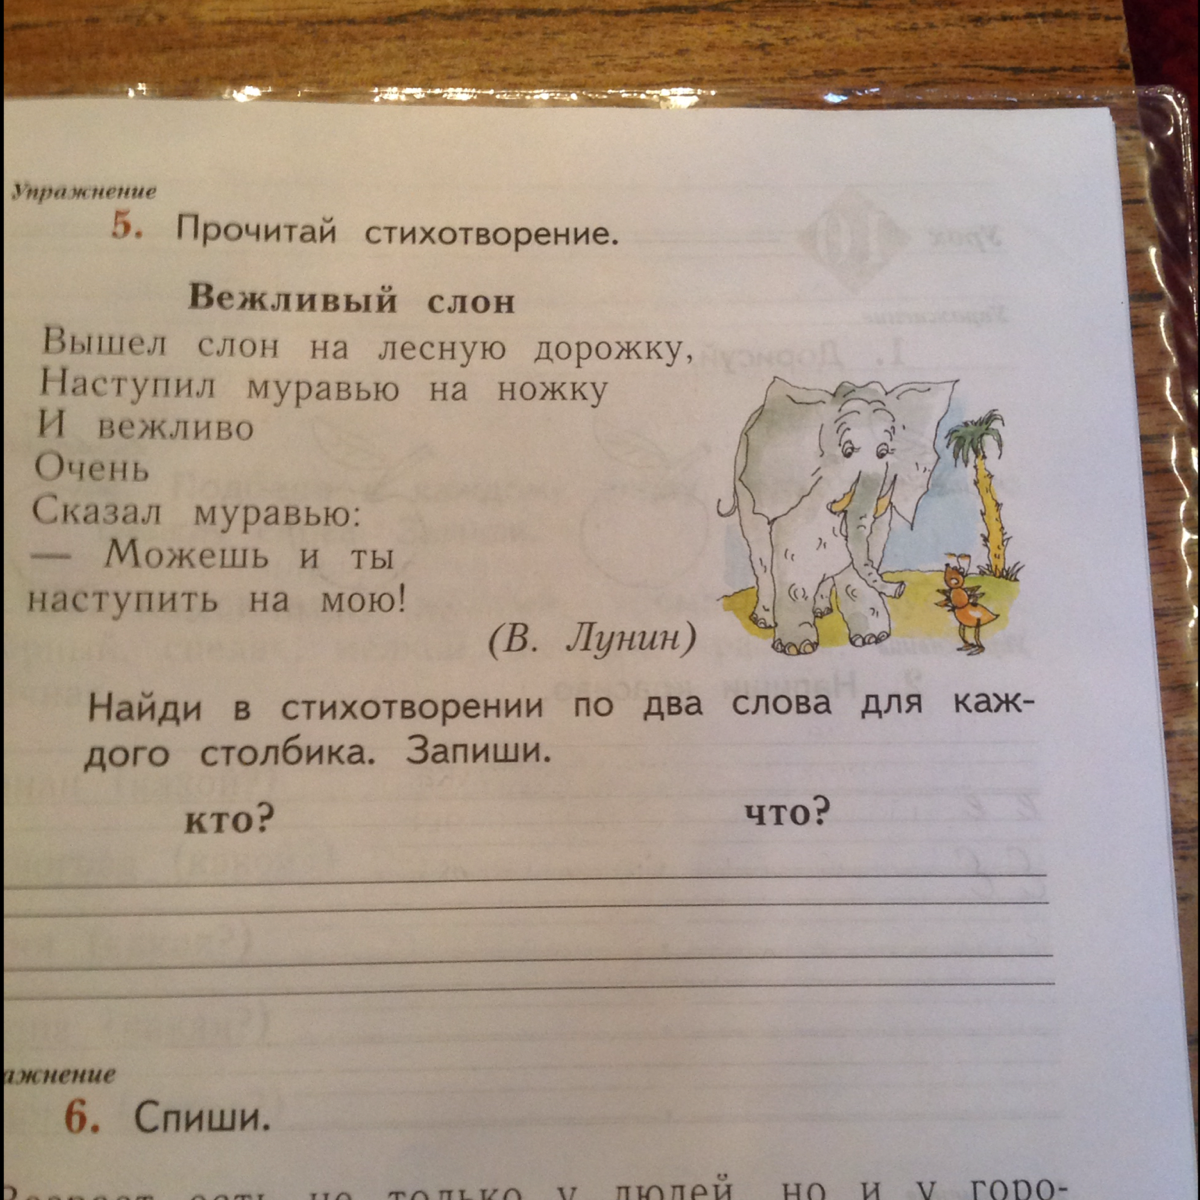 Вежливый вежлив 2 класс русский язык. Прочитай стихотворение вежливый слон. Вежливый слон стихотворение. Вежливый слон стихотворение русский язык. Вежливый слон вышел слон на лесную дорожку.